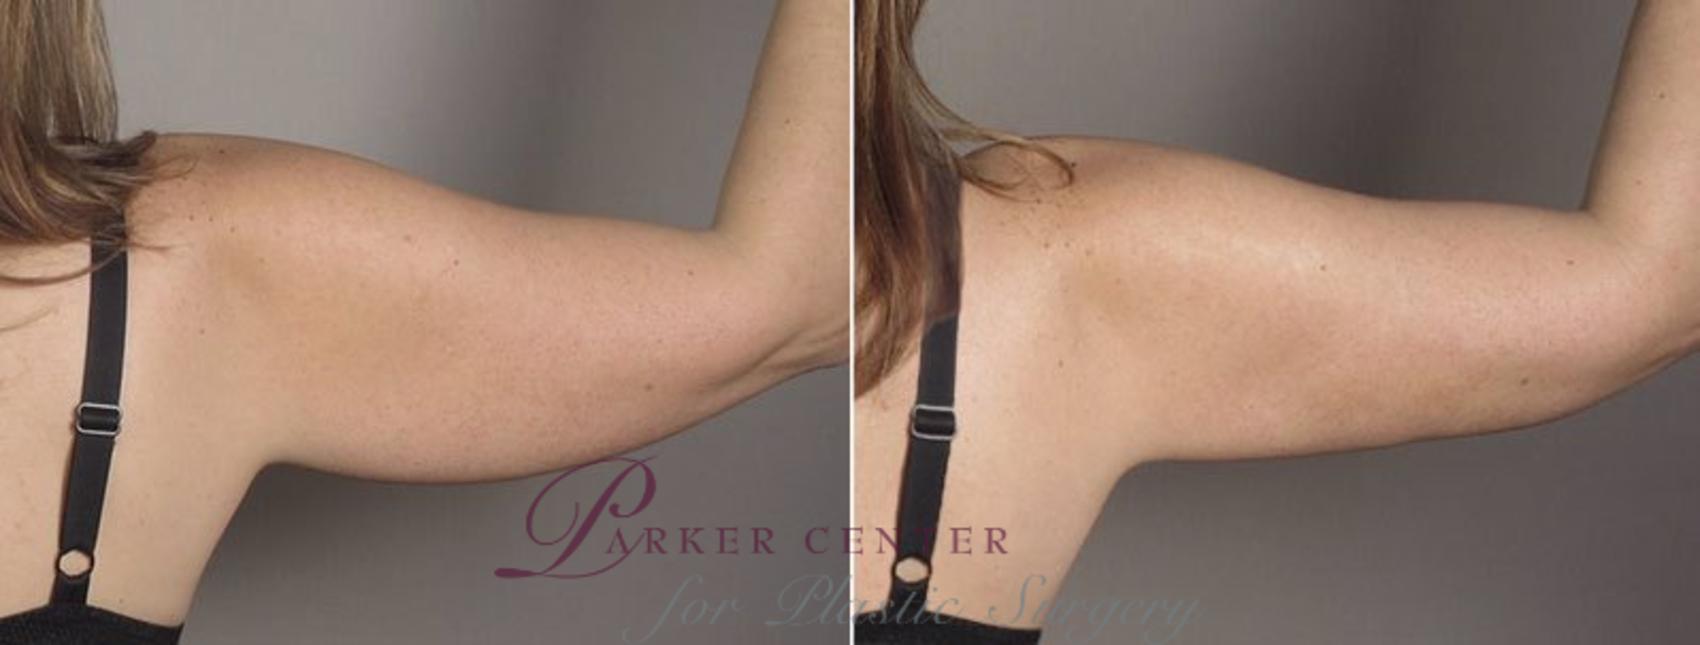 Upper Arm Rejuvenation Case 803 Before & After View #4 | Paramus, NJ | Parker Center for Plastic Surgery